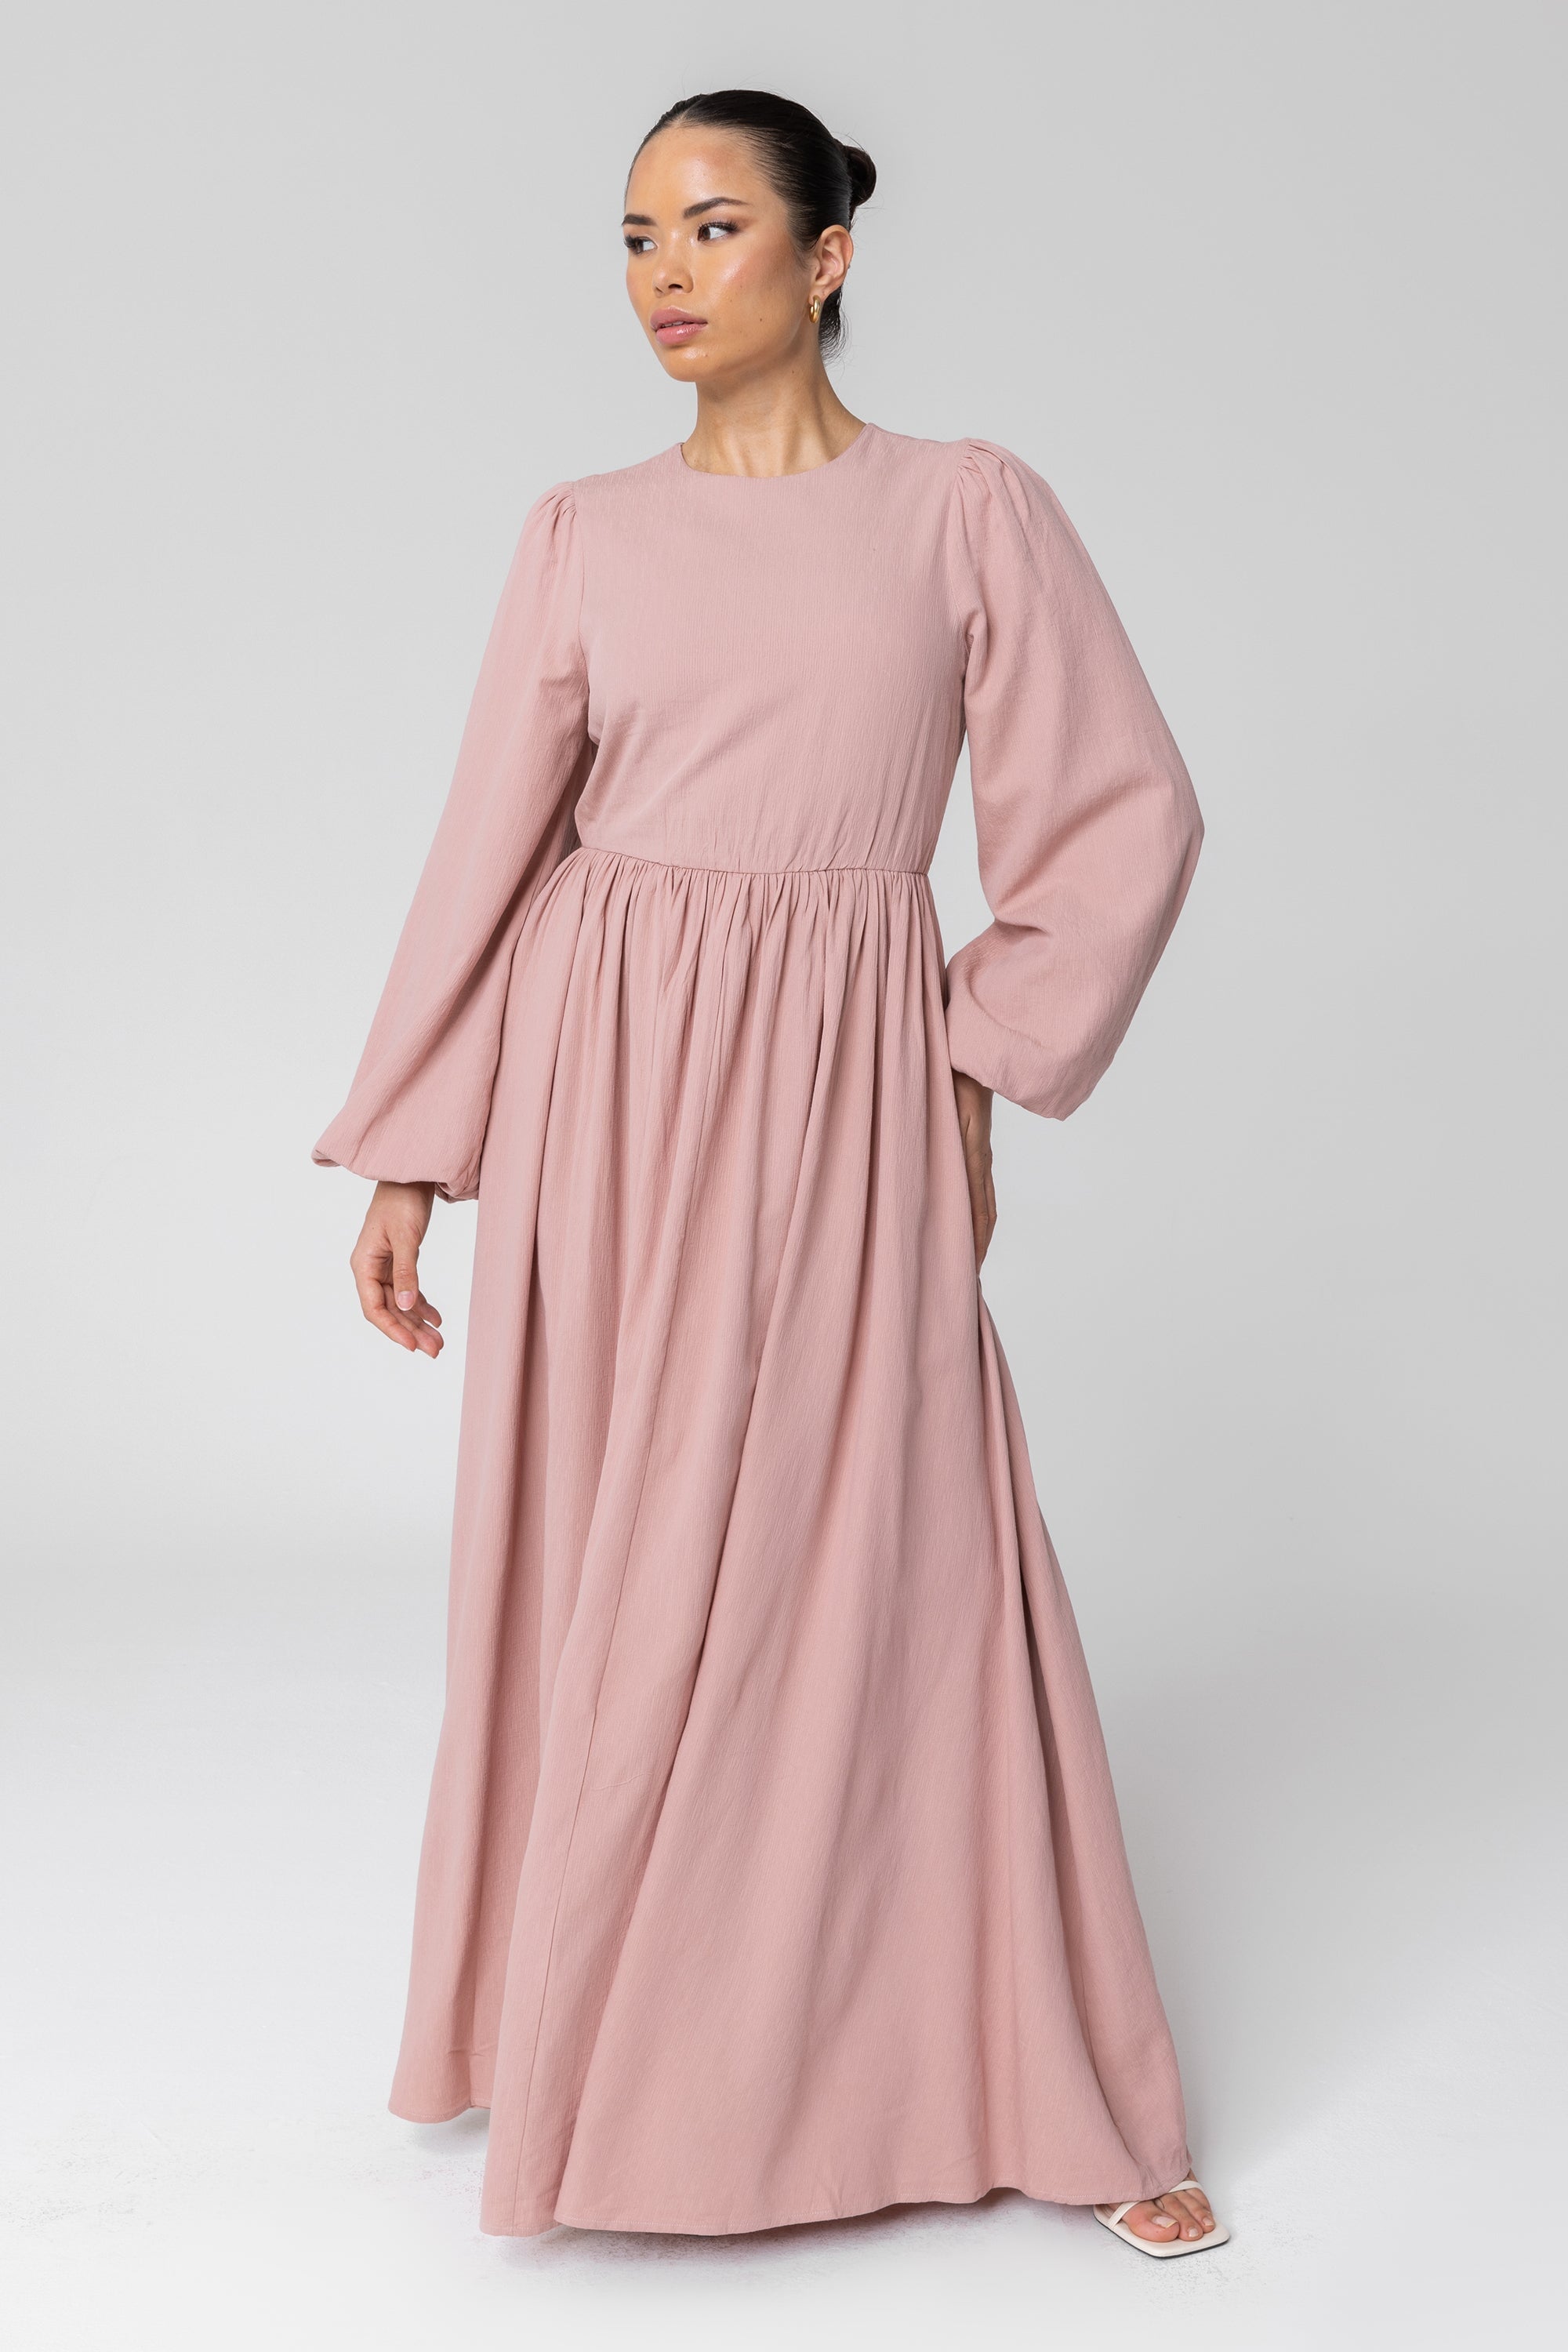 flowy pink dress